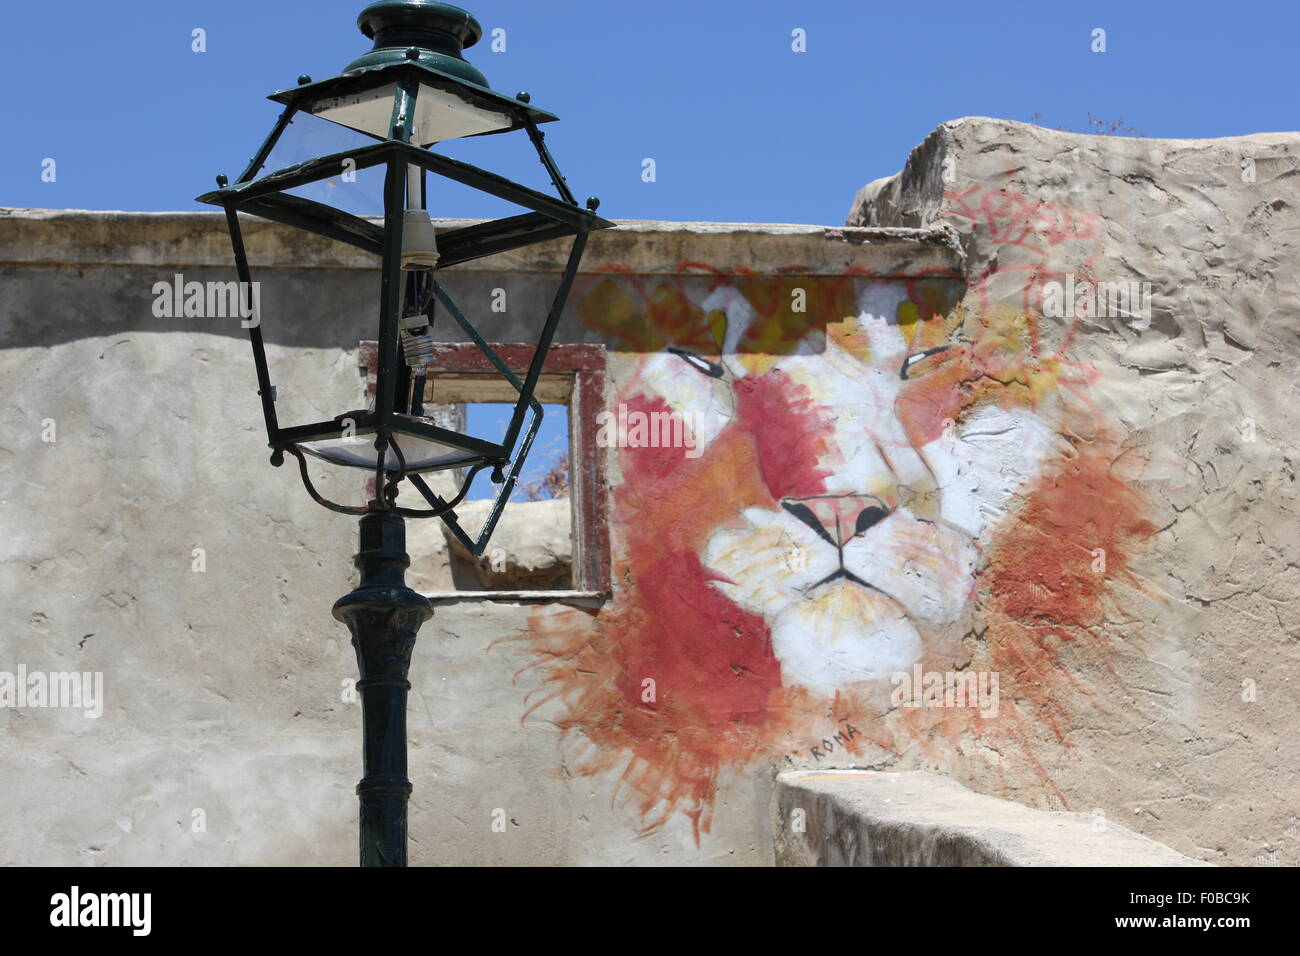 Lampione rotto con graffiti in background Foto Stock